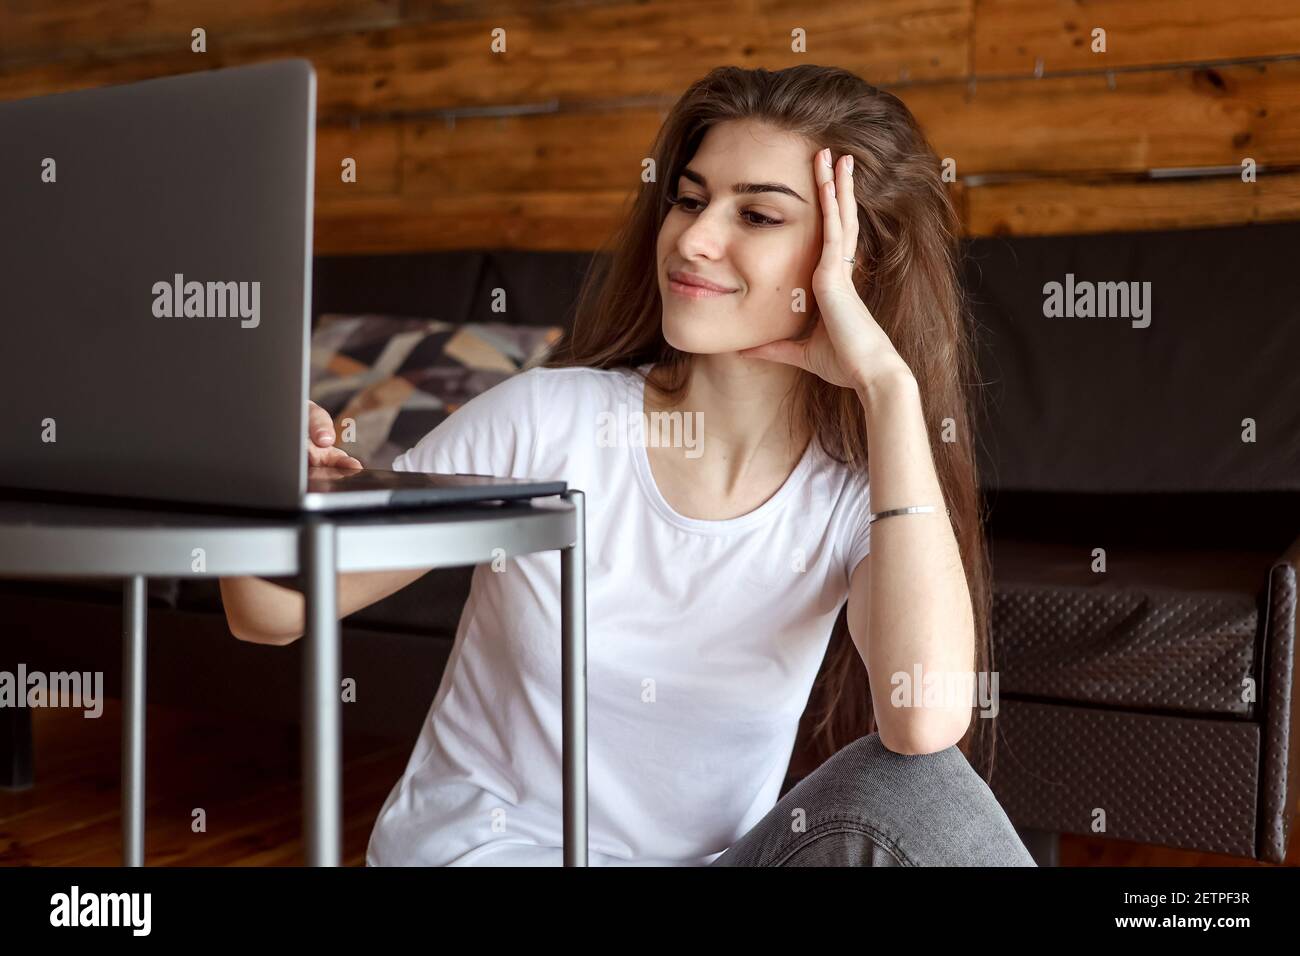 Attraente studente di ragazza sorridente felice che ha videochat seduto sul pavimento, utilizzando un computer portatile. Bella donna ama guardare il webinar educativo Foto Stock